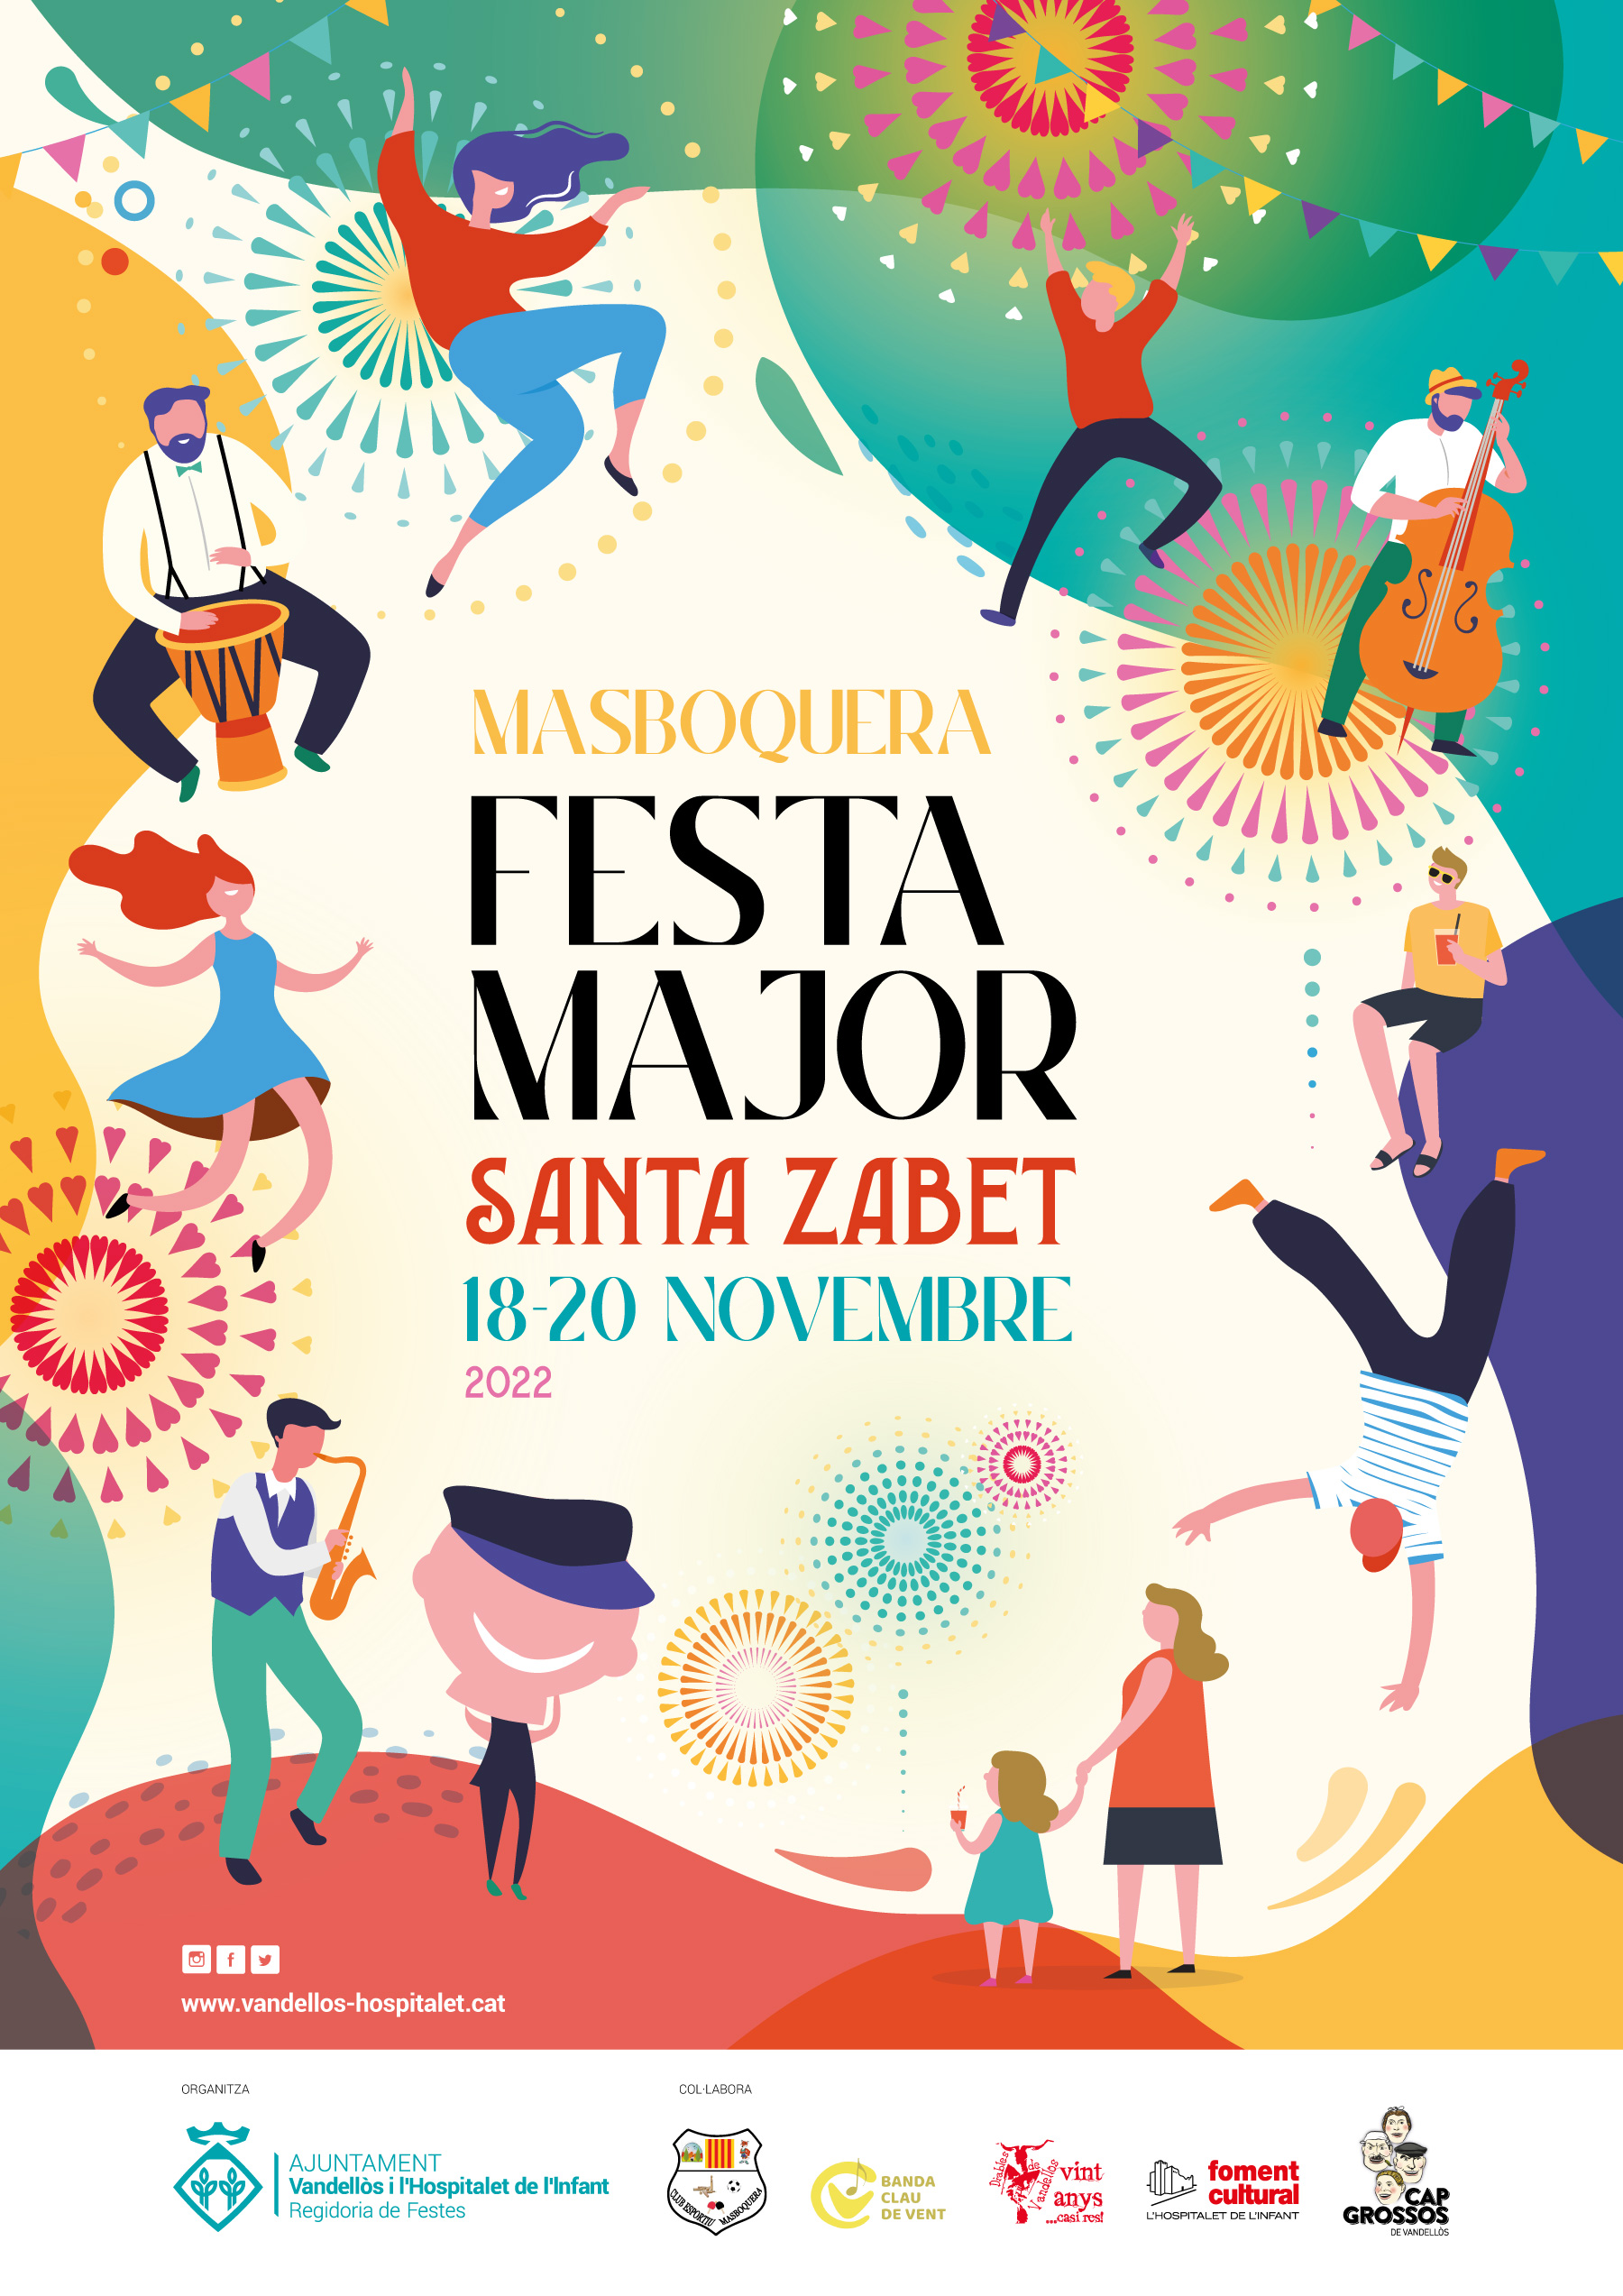 Gairebé una vintena d’actes per celebrar la Festa Major de Masboquera, del 18 al 20 de novembre